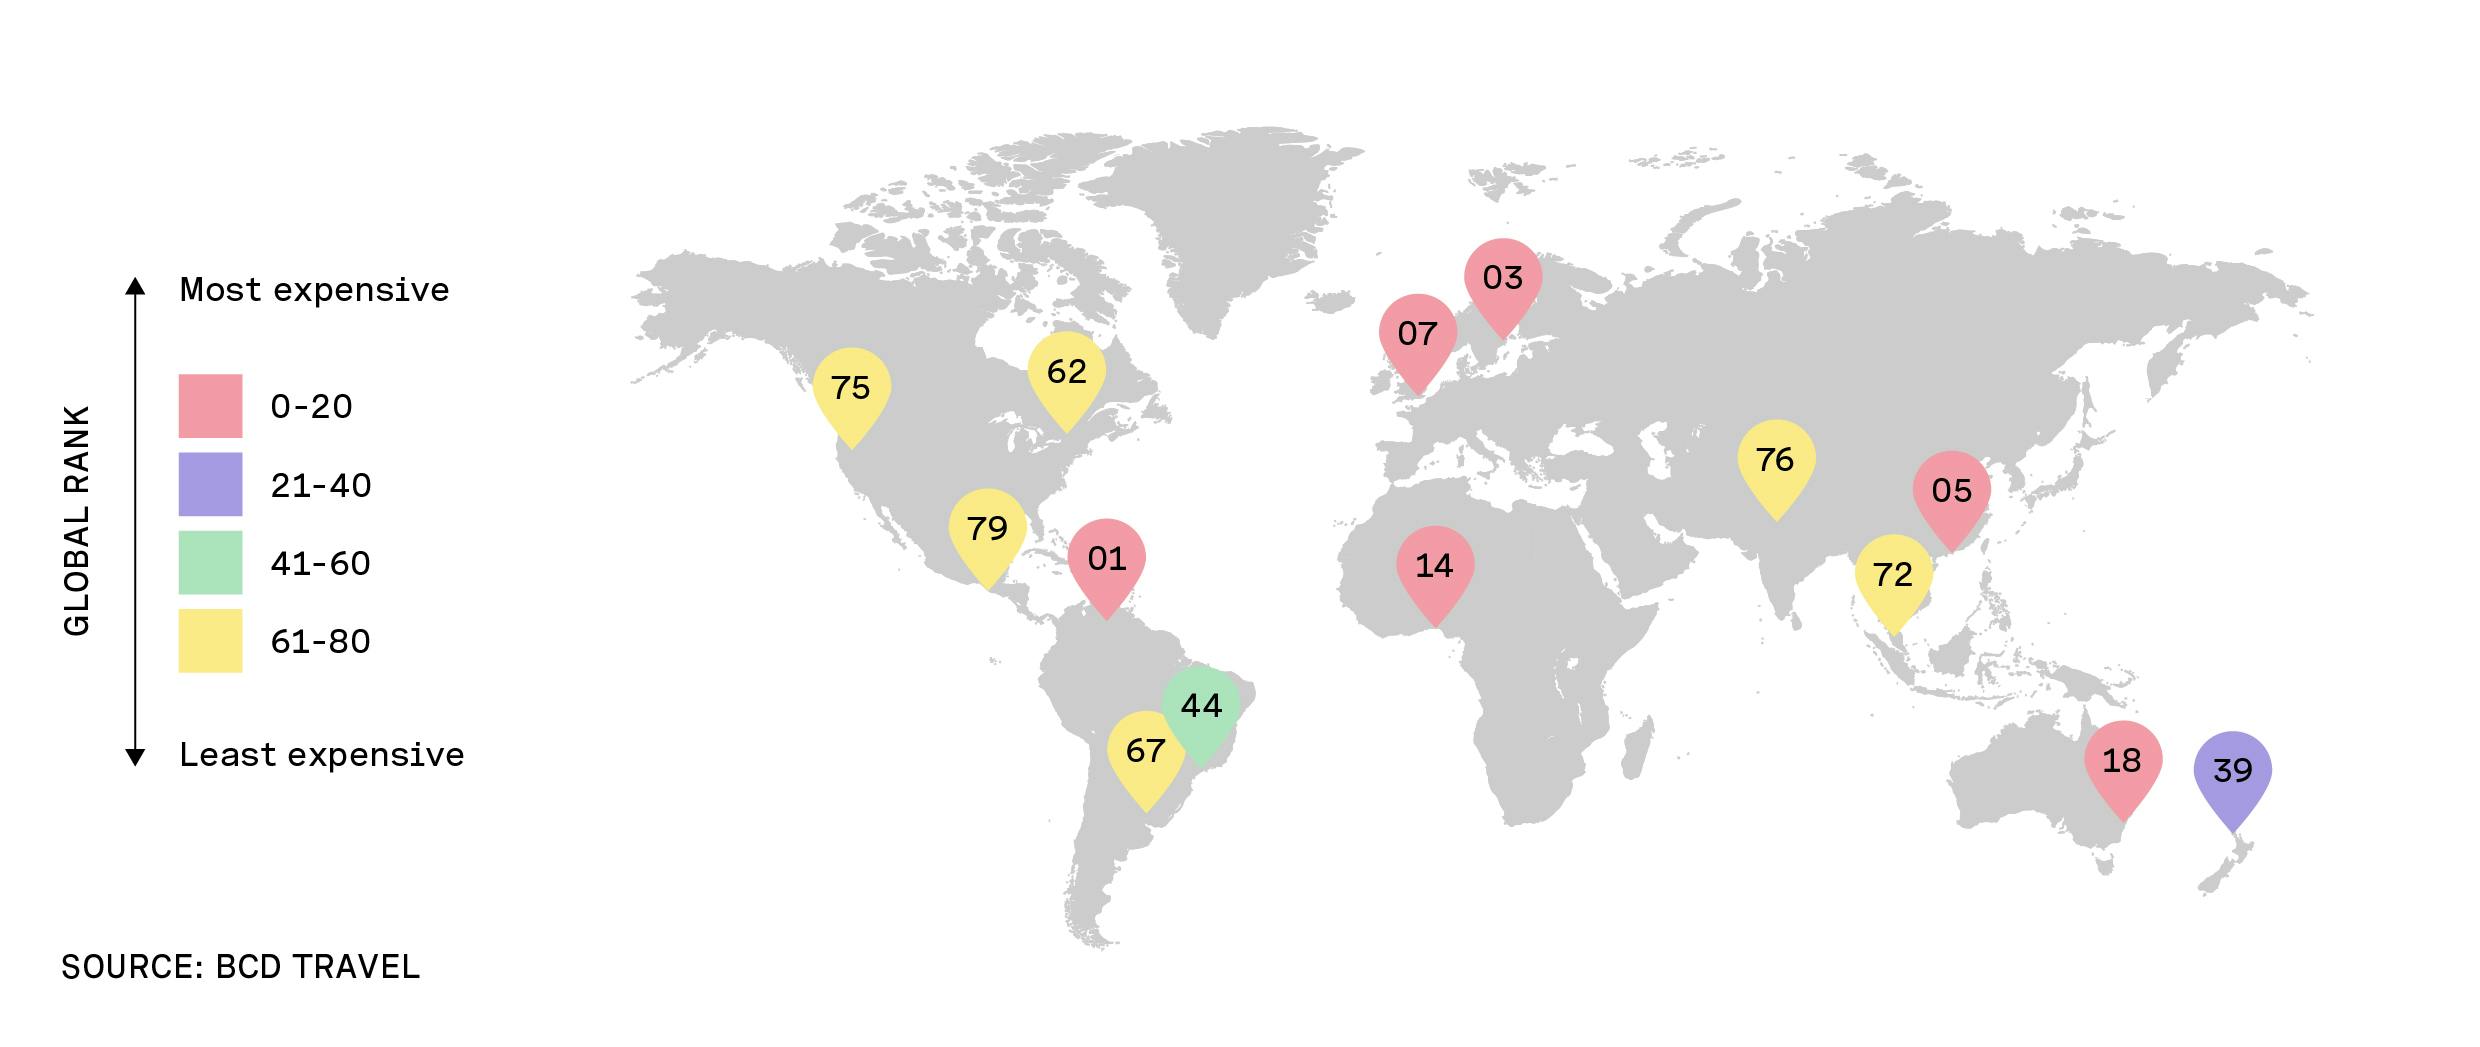 Mapa que muestra el ranking de países por orden de barato a caro.